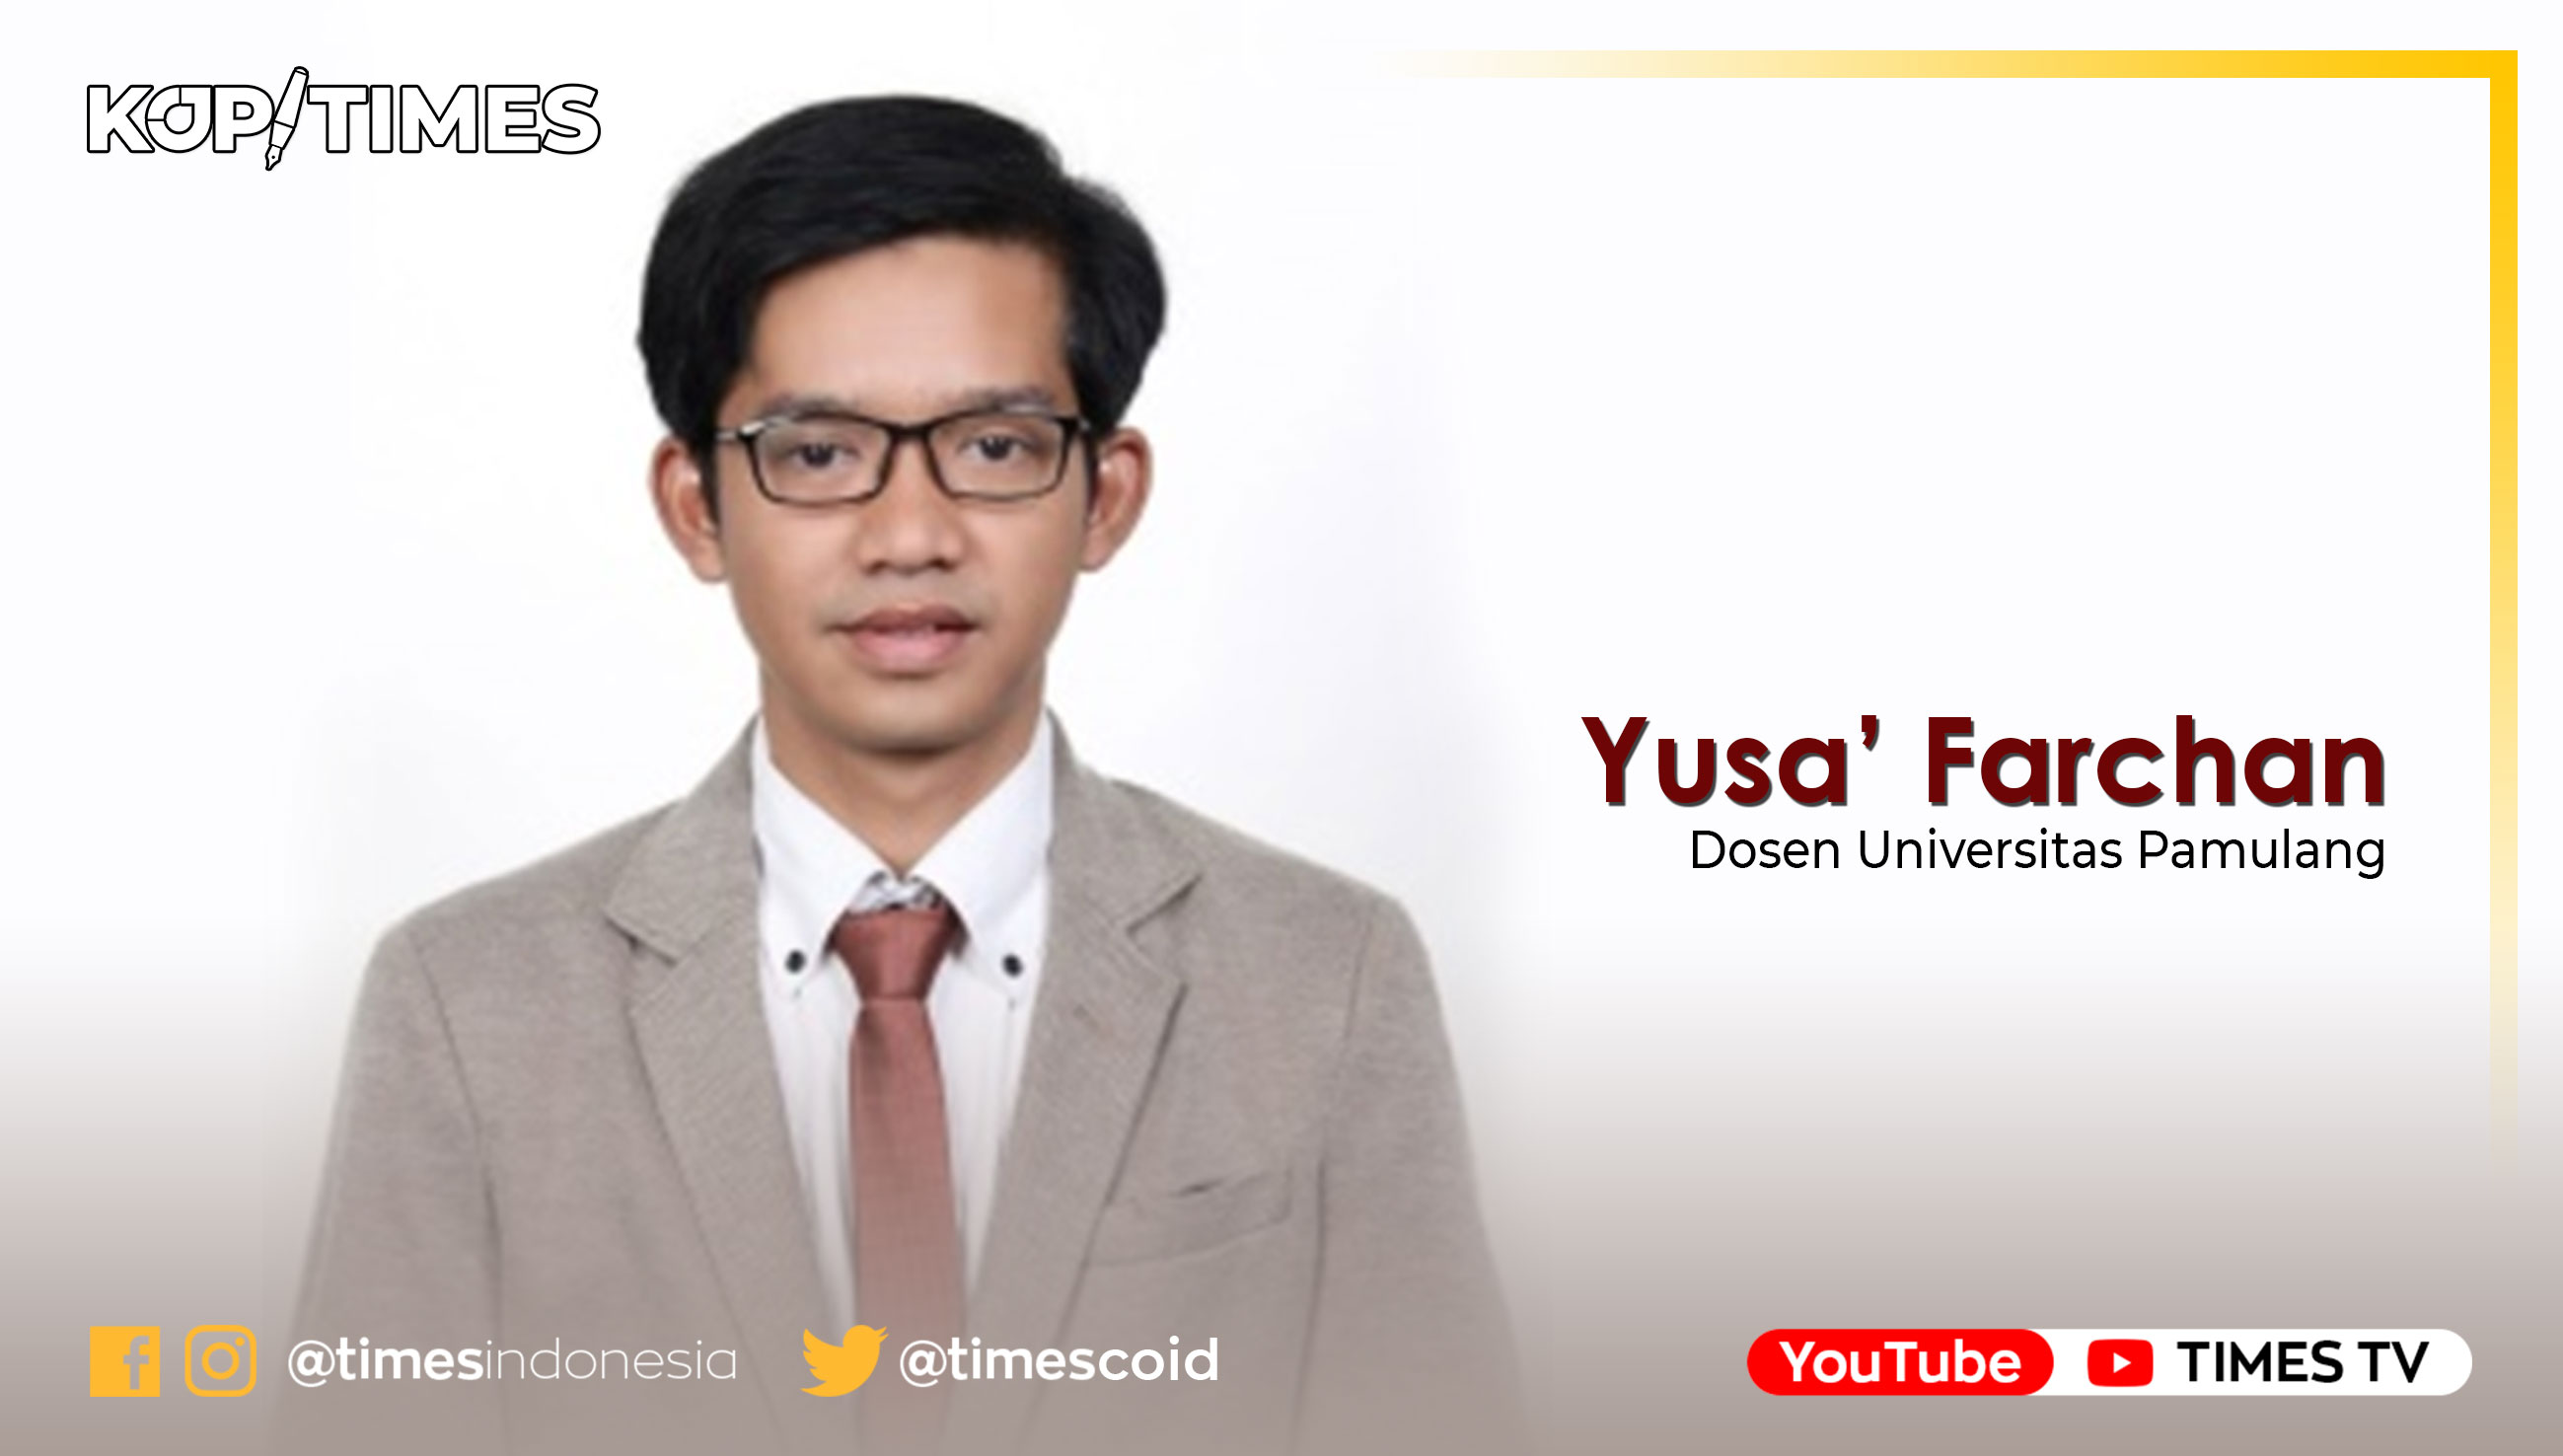 Yusa’ Farchan, Dosen Prodi Akuntansi S1 Universitas Pamulang. 